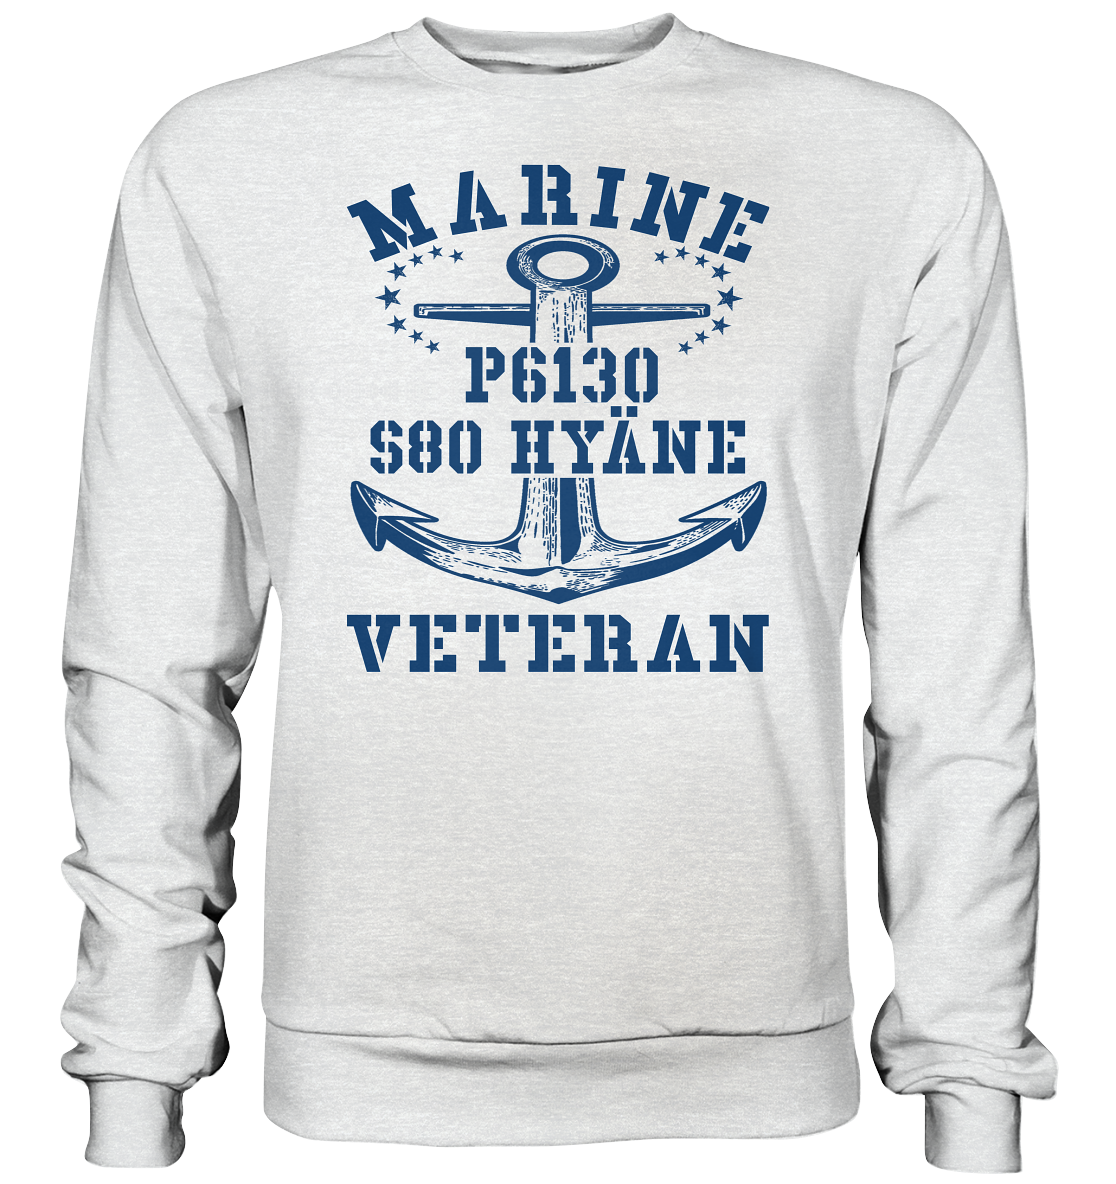 FK-Schnellboot P6130 HYÄNE Marine Veteran - Premium Sweatshirt